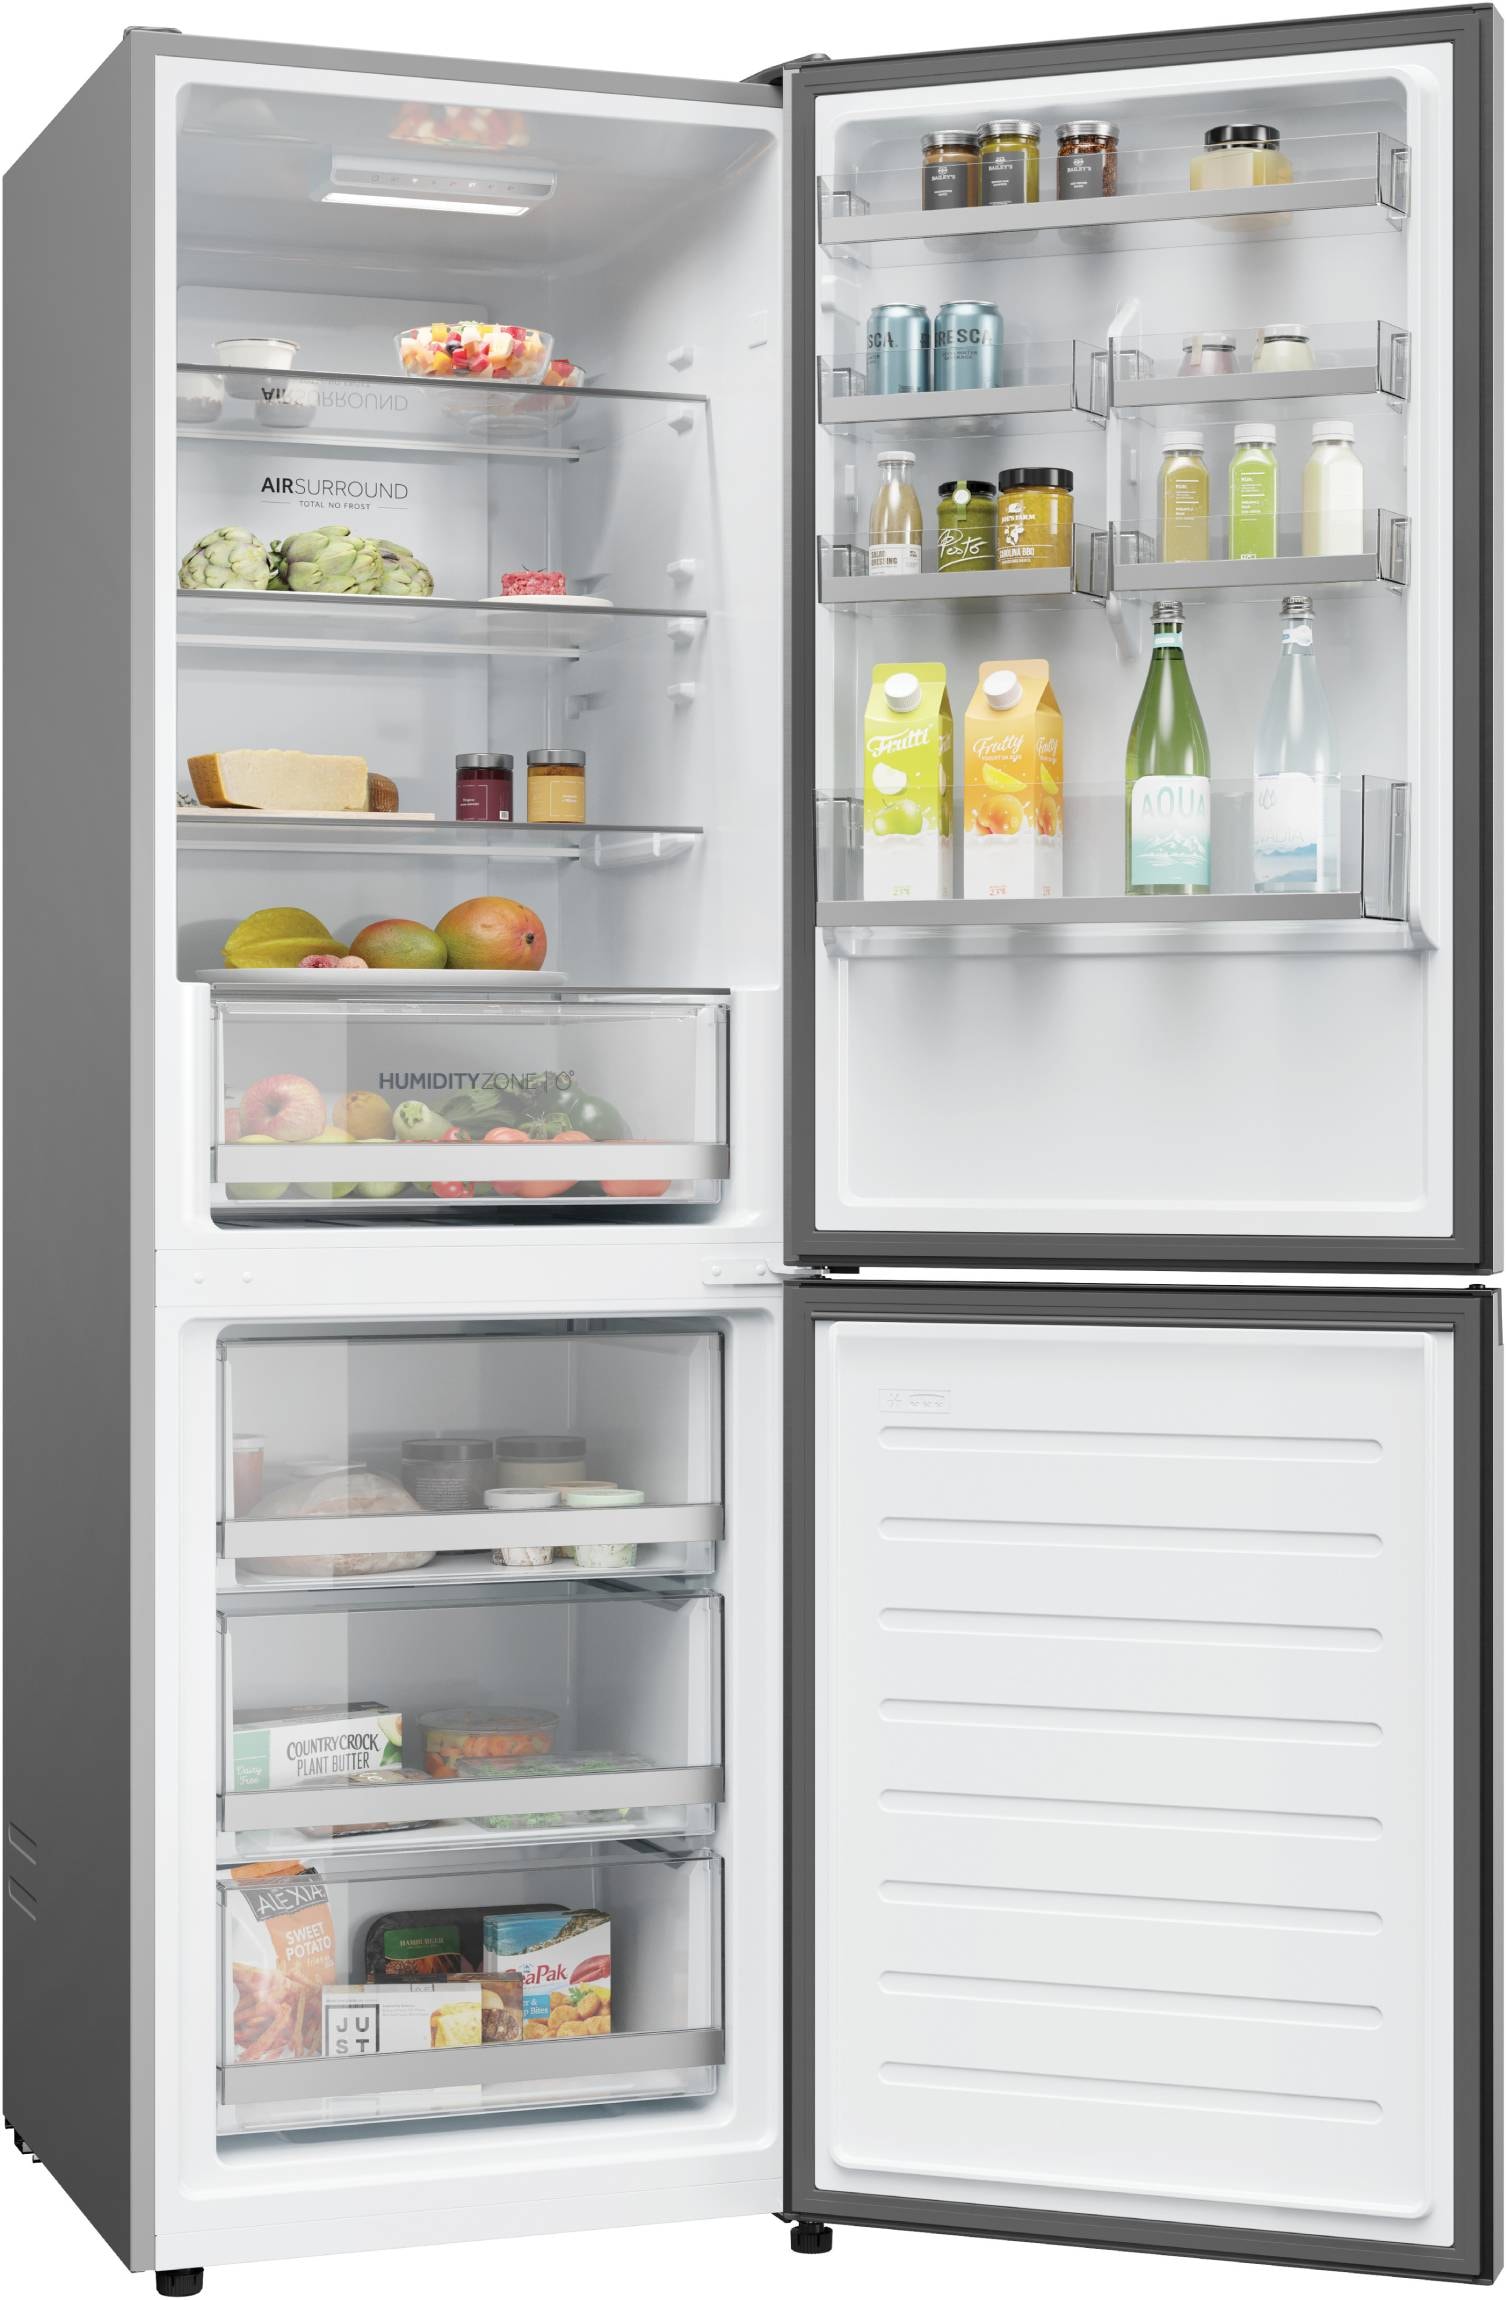 HAIER Réfrigérateur congélateur bas H1DWDNPK186 - Achat / Vente  réfrigérateur classique HAIER Réfrigérateur congélateur bas H1DWDNPK186 -  Cdiscount